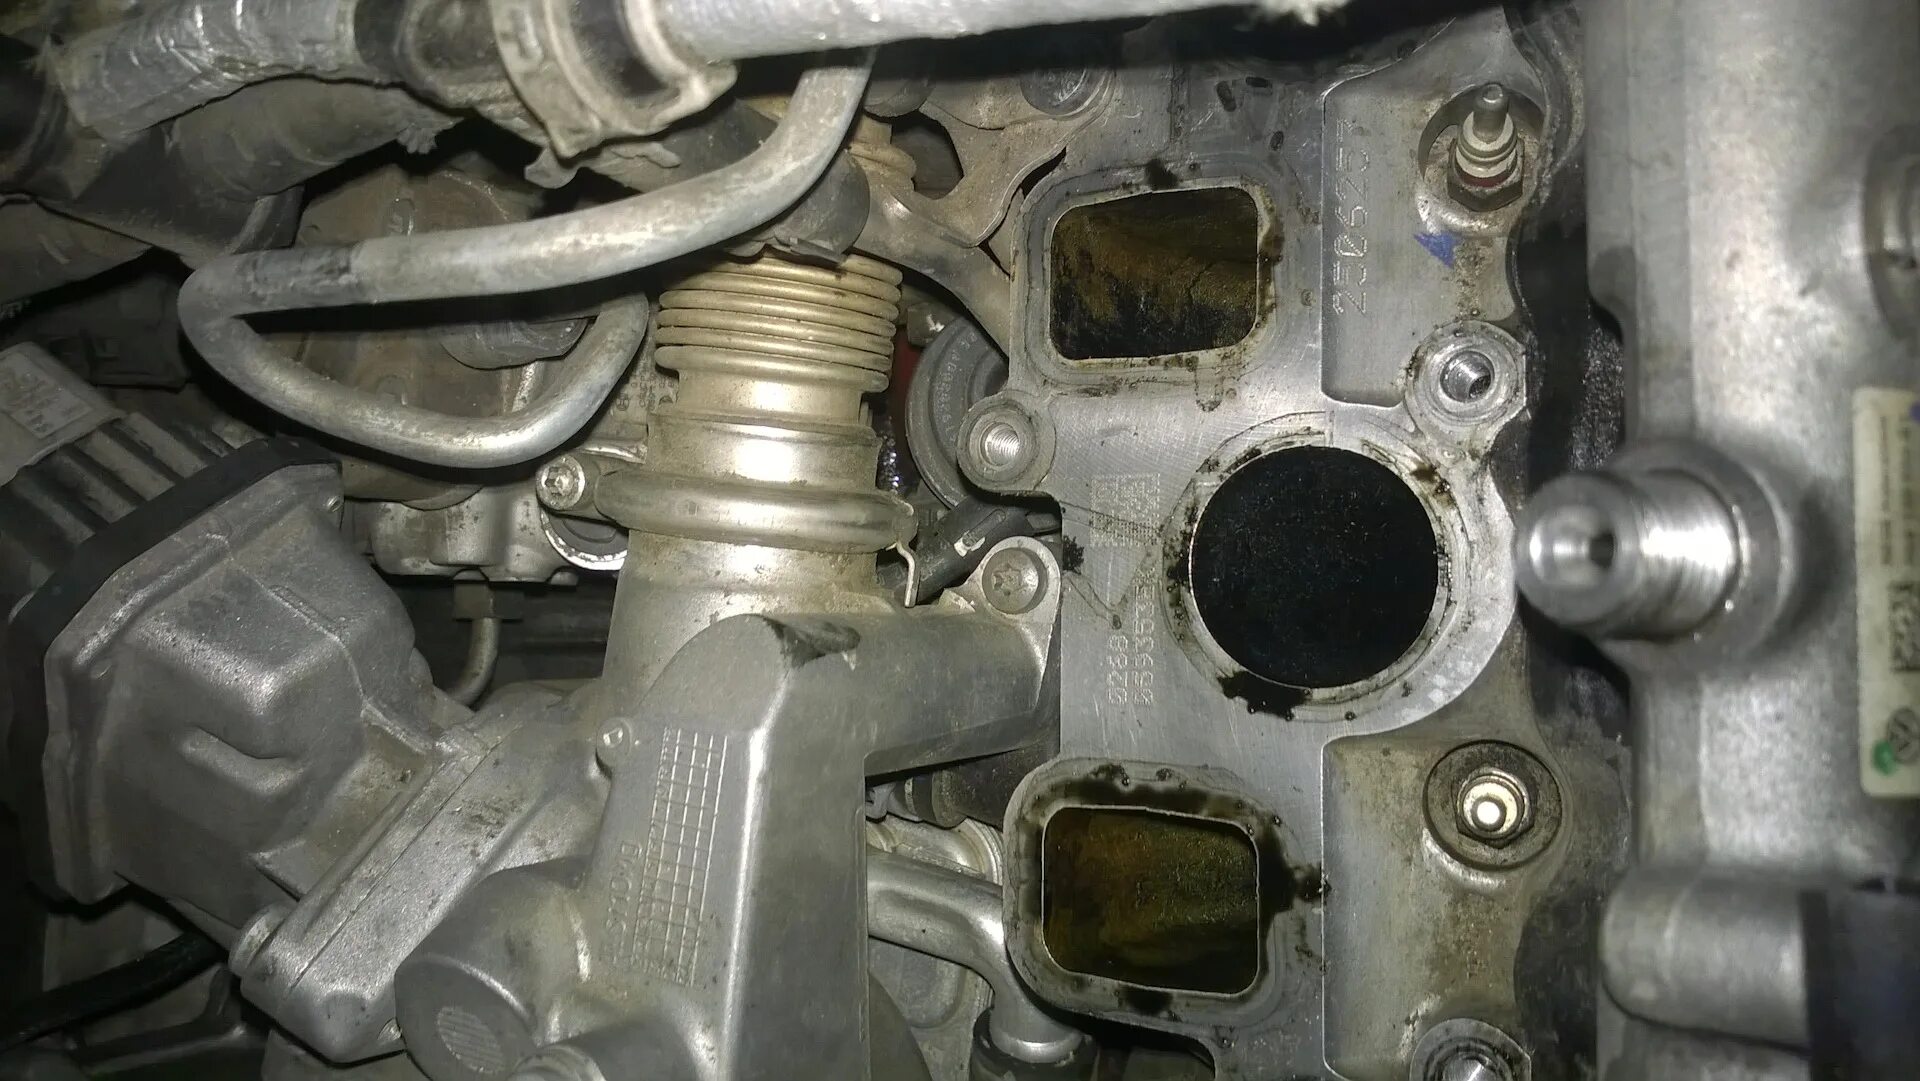 Заглушка блока цилиндров Фольксваген Туарег 3.0 дизель. Подтеки масла двигателя Туарег 2.5 дизель 2006. 3.0 TDI капиталка. Течь антифриза Audi q7 3.6.